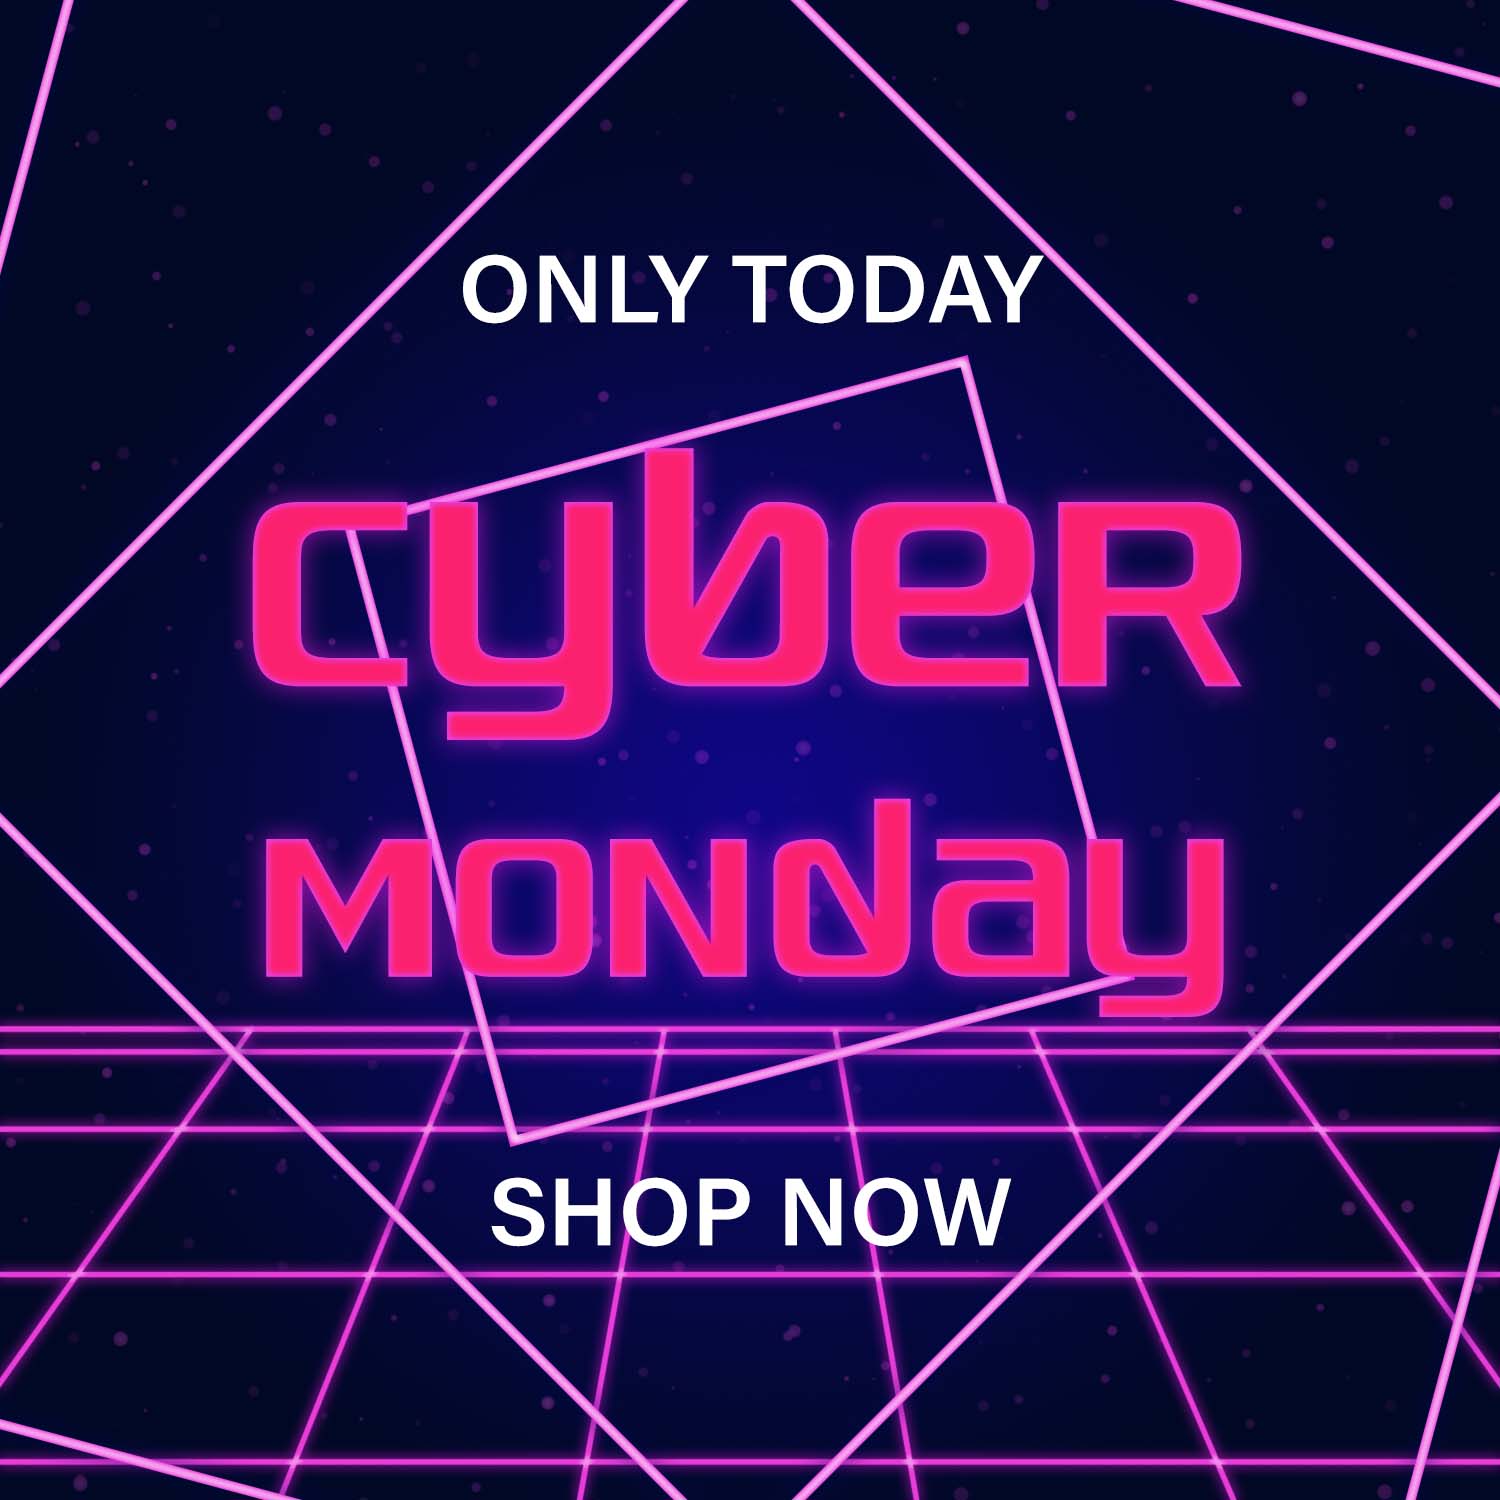 Retro Futuristic Cyber Monday Free Vector | Master Bundles